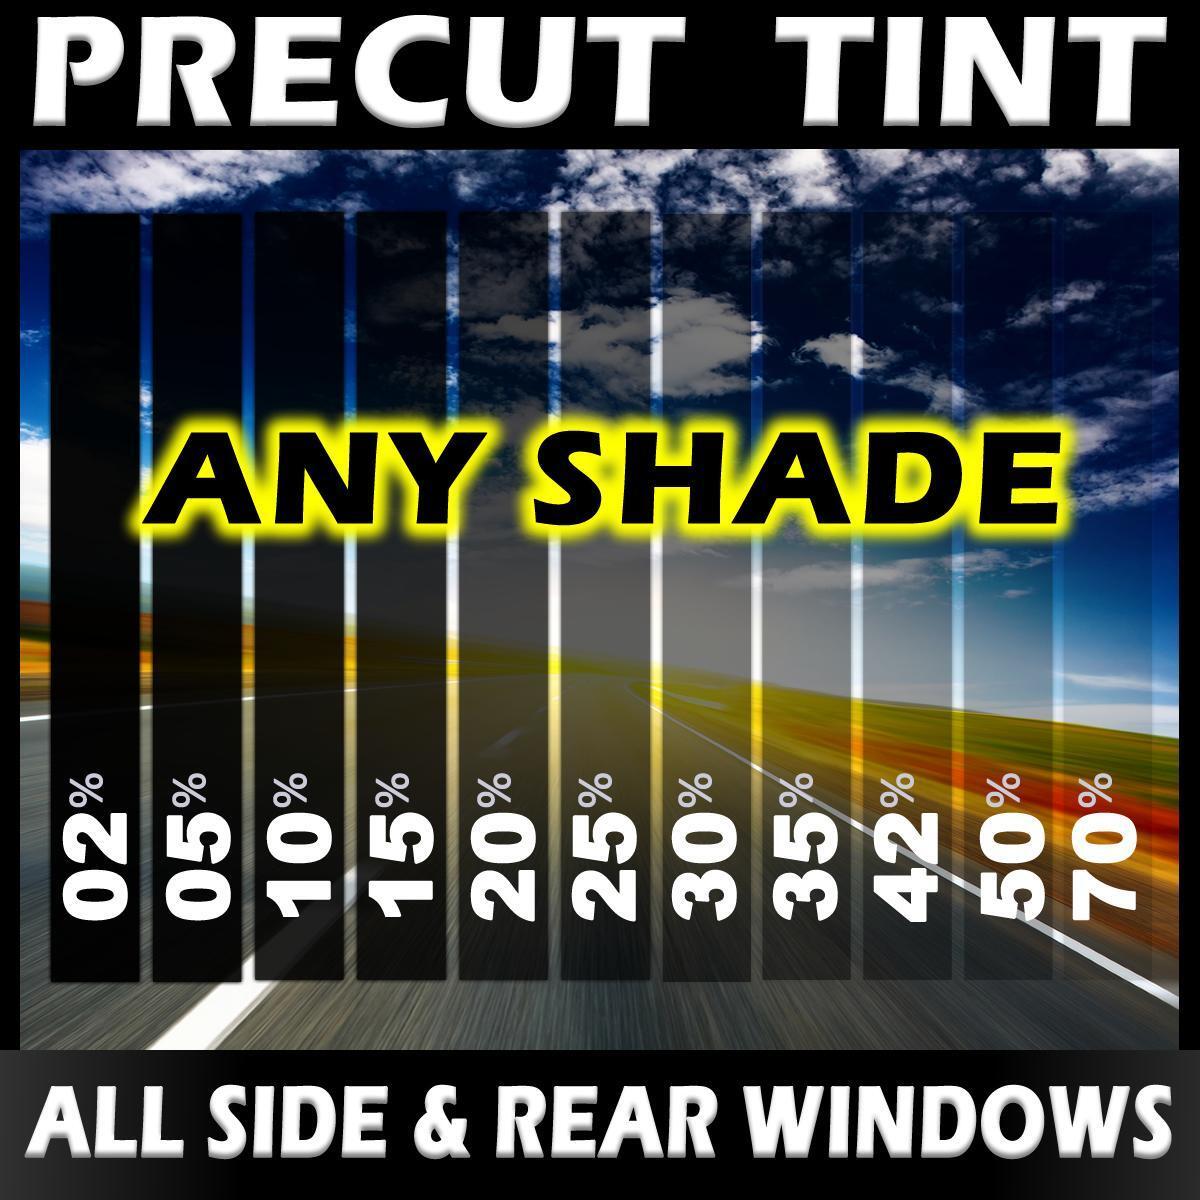 PreCut Window Film for Audi A8 4DR SEDAN 2004-2010 - Any Tint Shade VLT